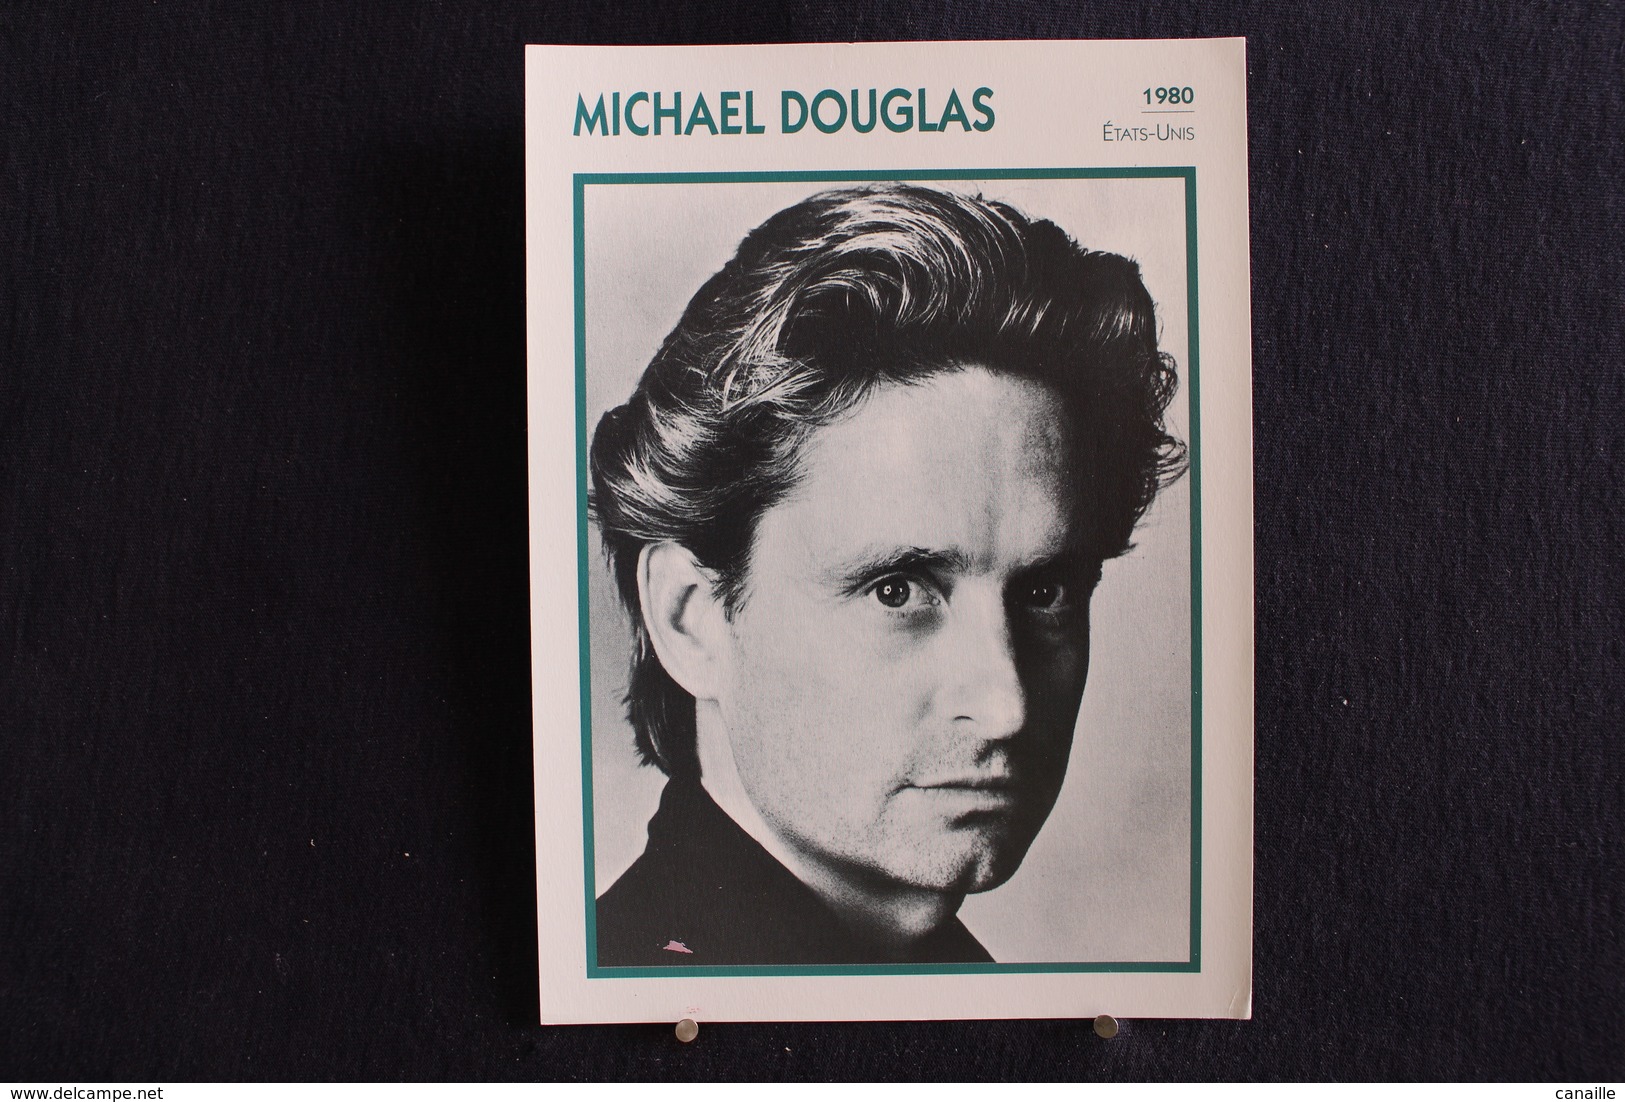 Sp-Acteur, Producteur De Cinéma Américain, 1980 - Michael Douglas Né En 1944 à New Brunswick (New Jersey) - Acteurs